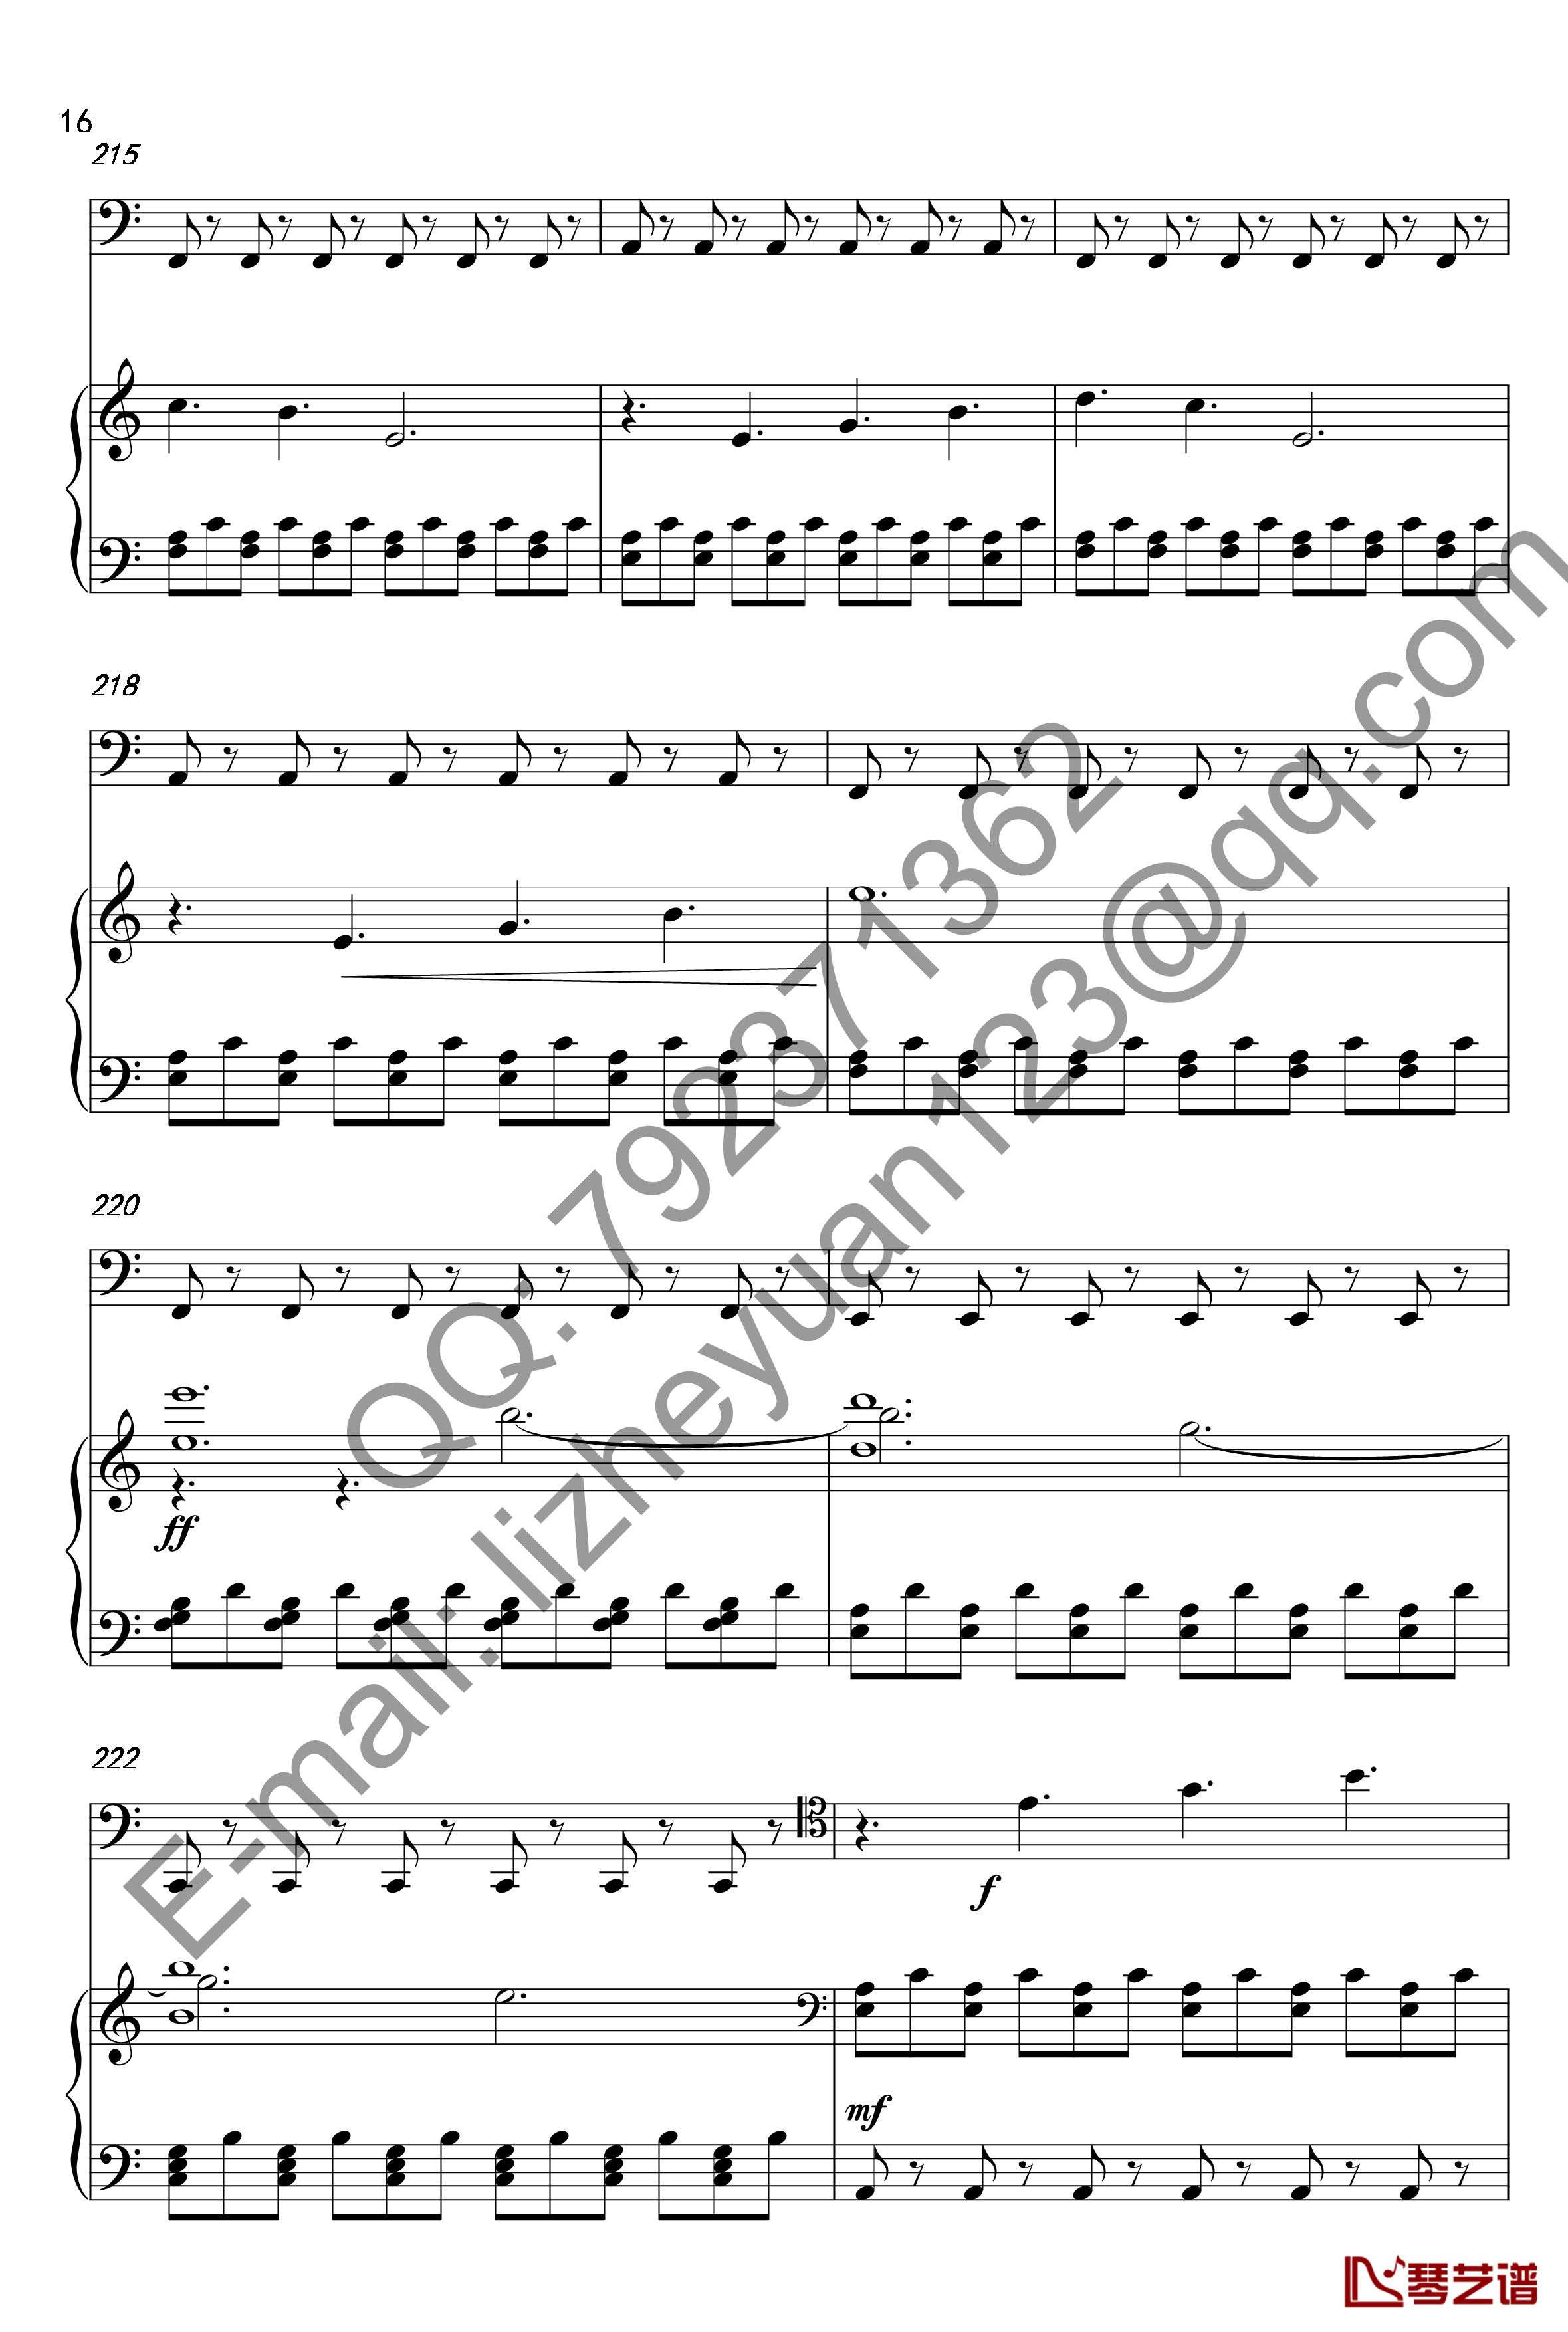 唐顿庄园主题曲钢琴谱-钢琴+大提琴-唐顿庄园16